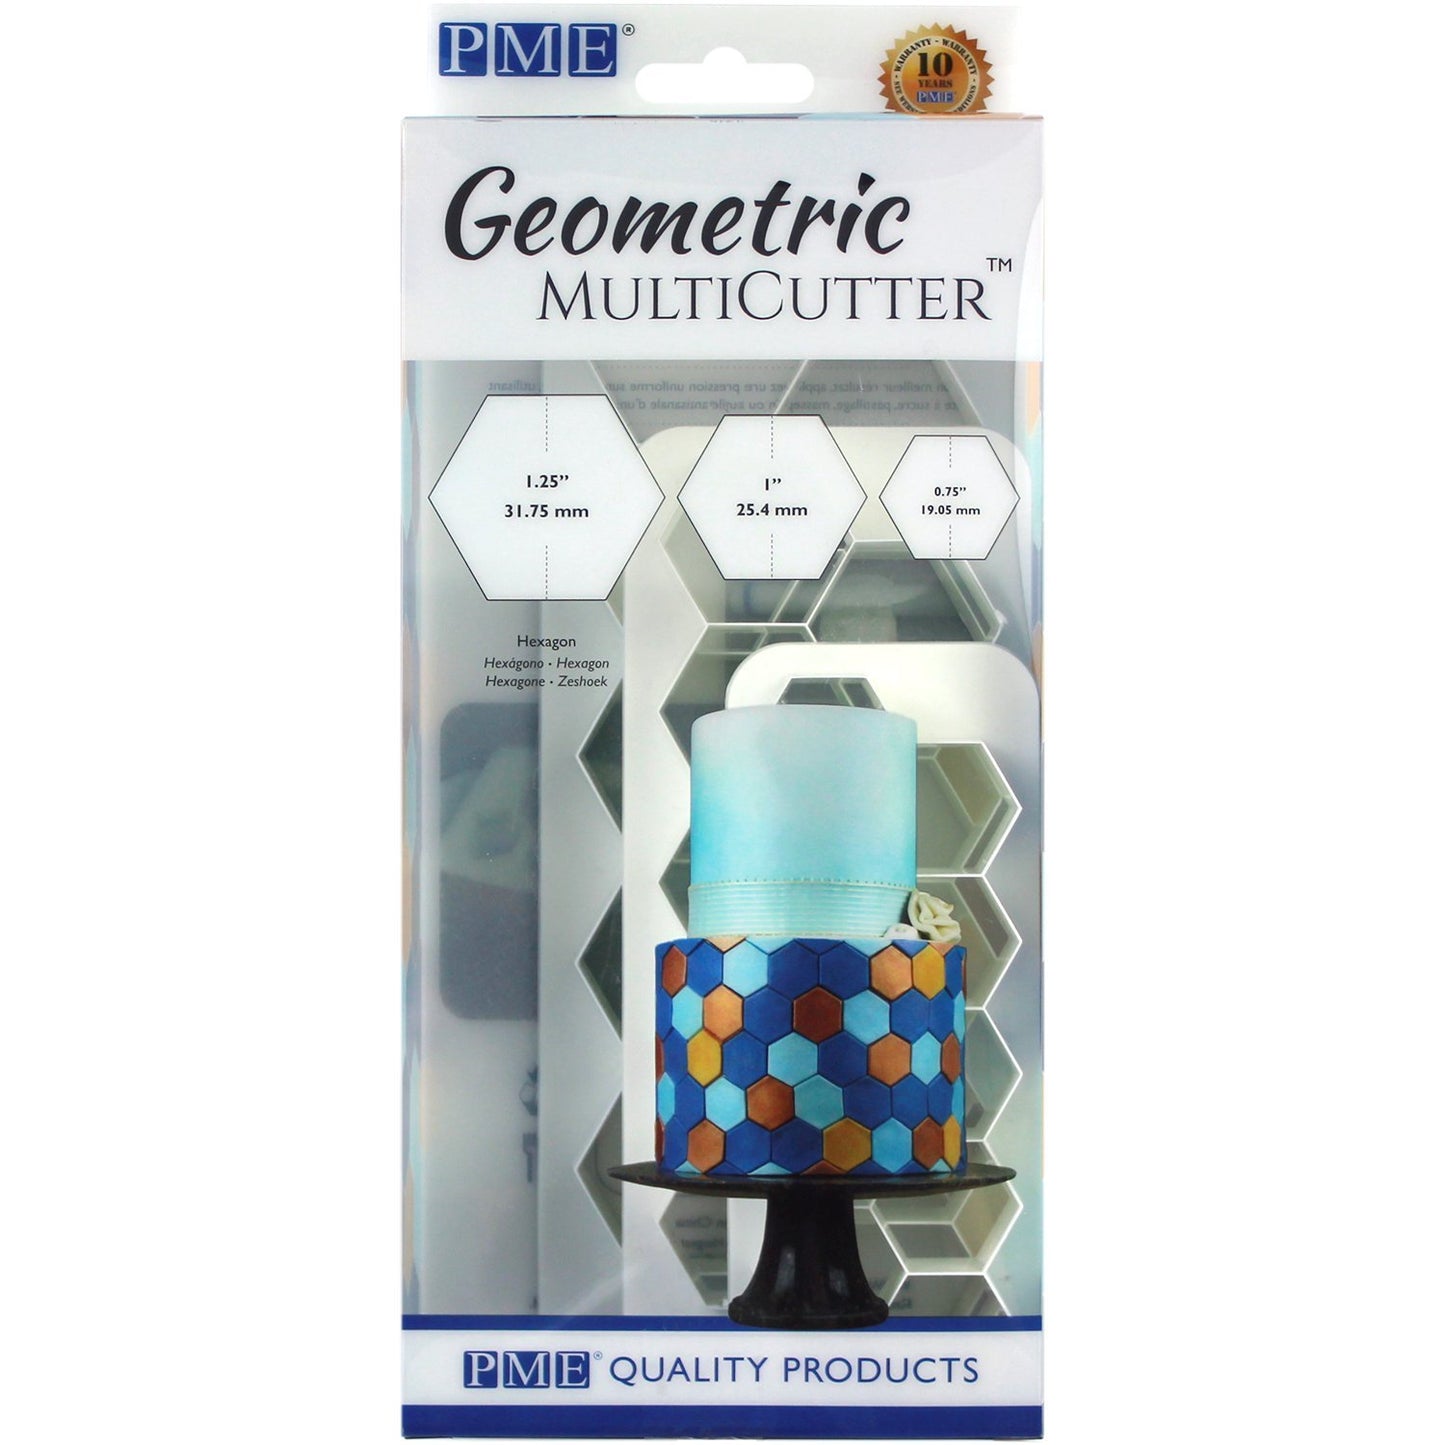 PME Geometric Multicutter - Hexagon